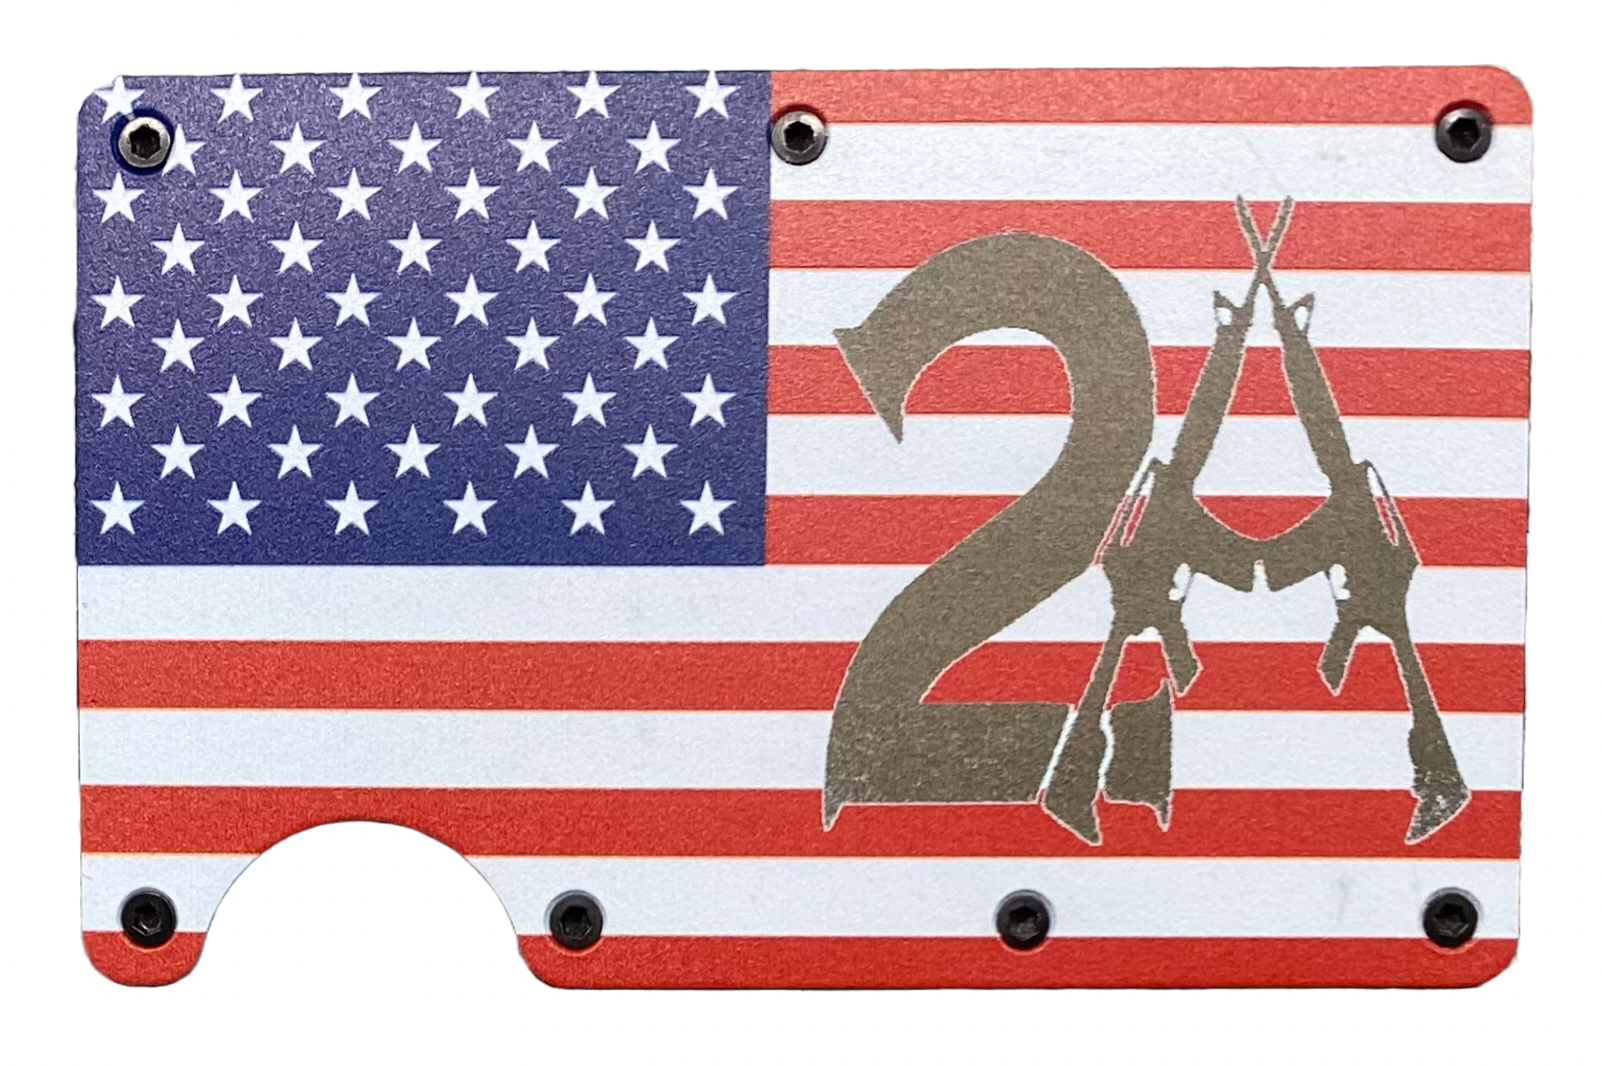 2A w/Guns American Flag